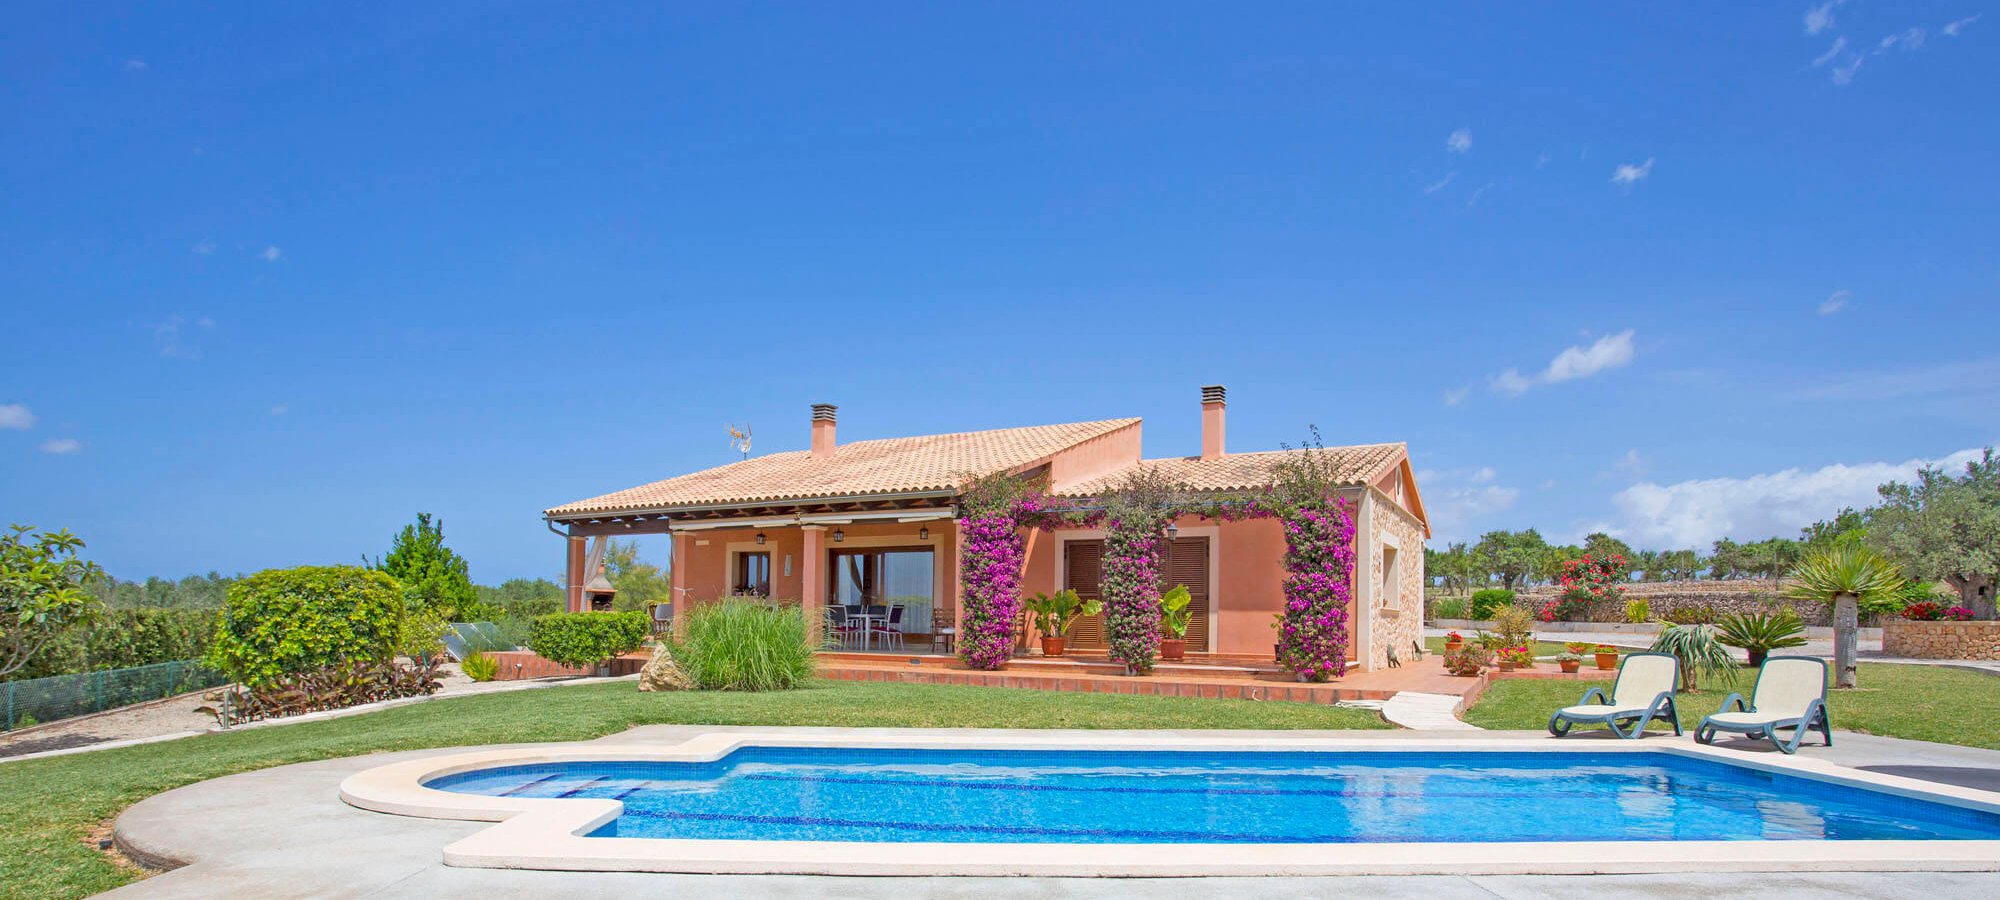 Ferienhaus Mallorca für 4 Personen mit privatem Pool mieten.